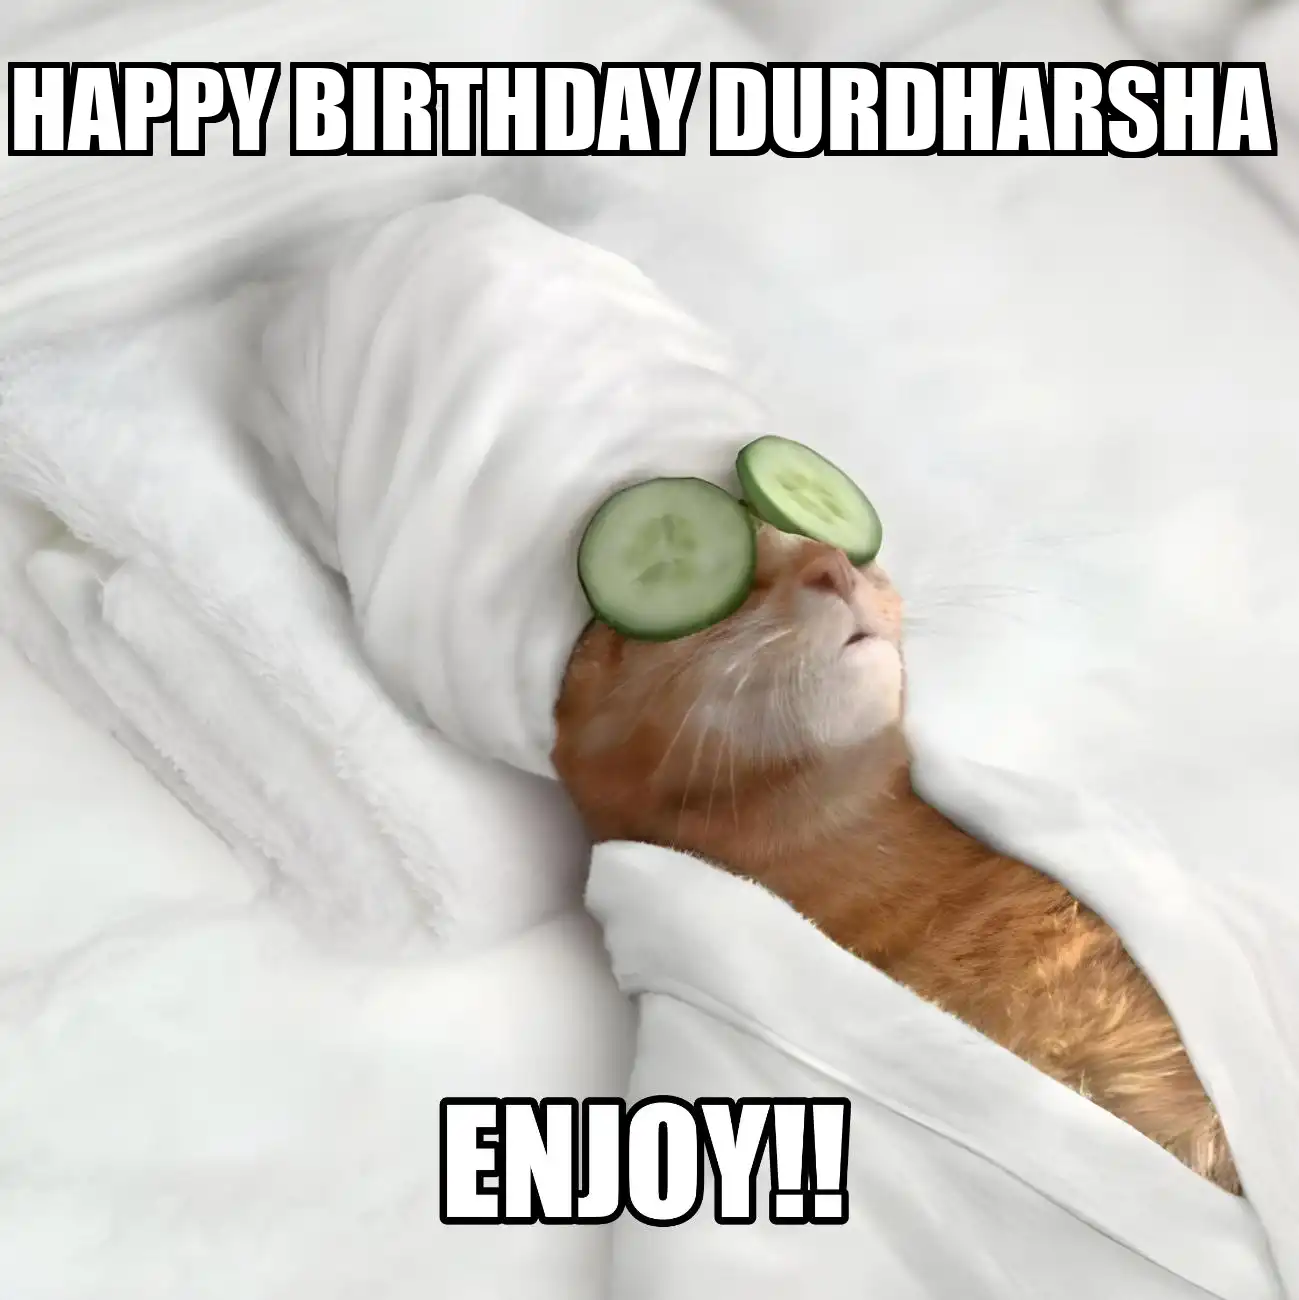 Happy Birthday Durdharsha Enjoy Cat Meme